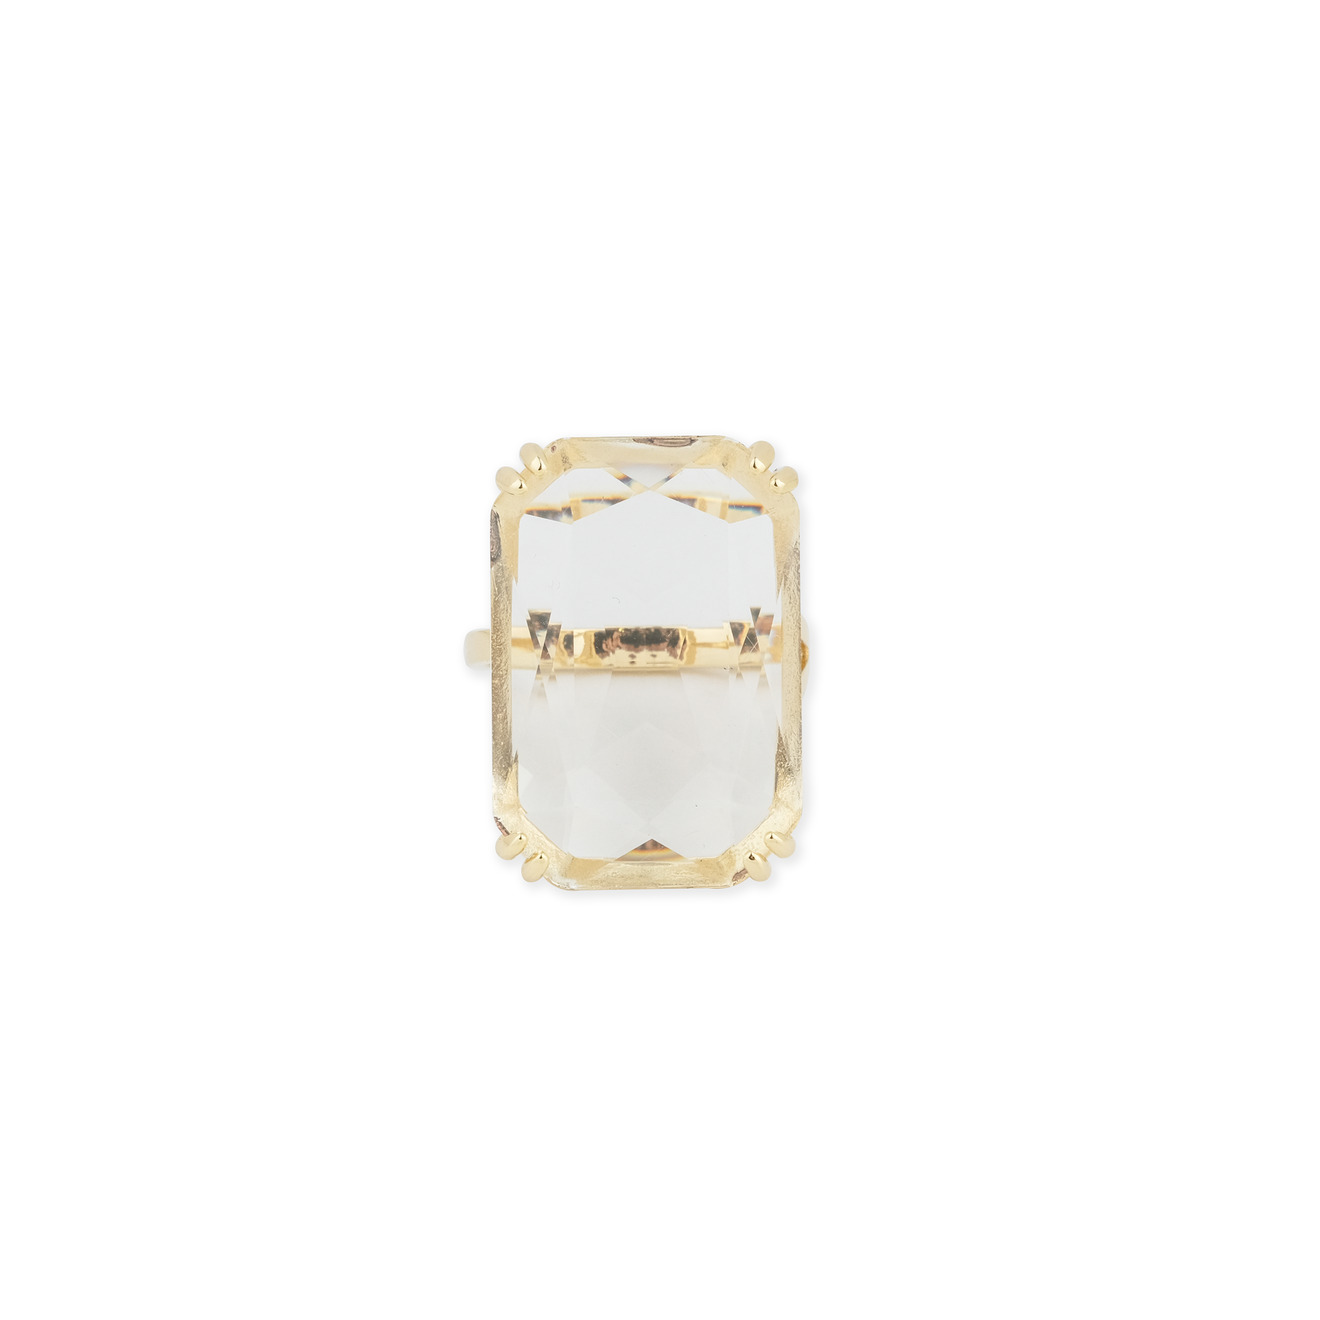 Herald Percy Золотистое кольцо с прямоугольным кристаллом herald percy золотистая цепочка с подвеской сердцем с кристаллом